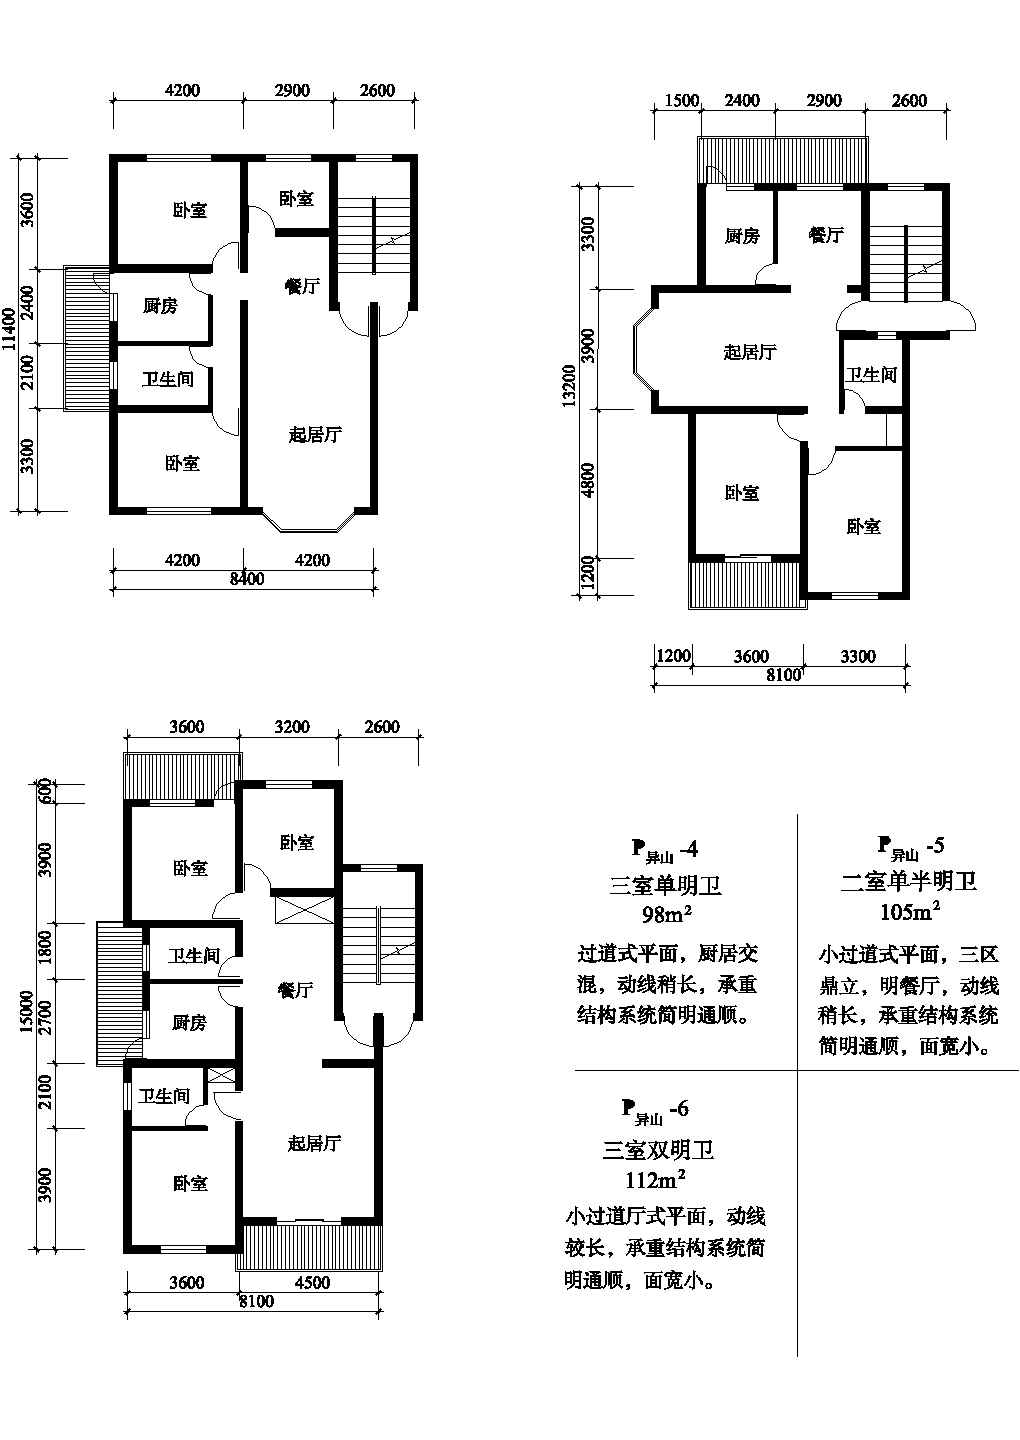 三室98/105/112平方单元式住宅户型平面图纸